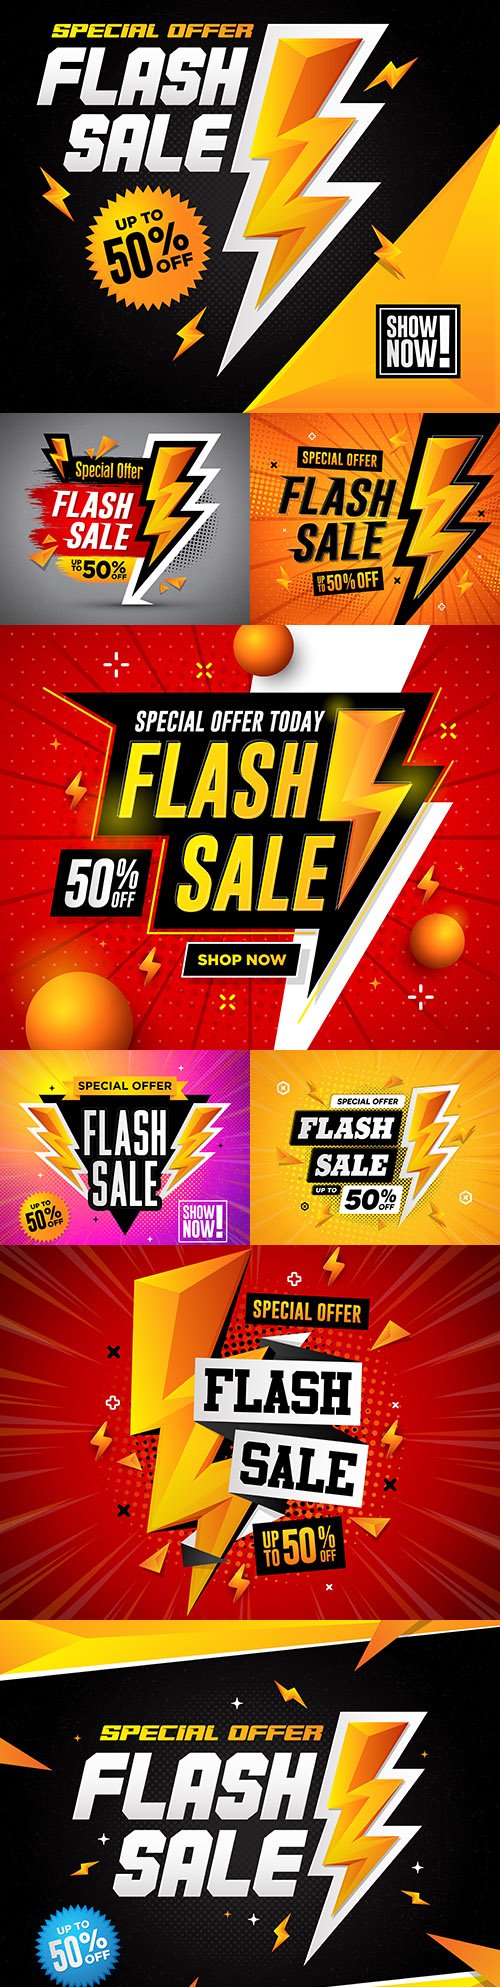 Flash sale special offer square design illustration